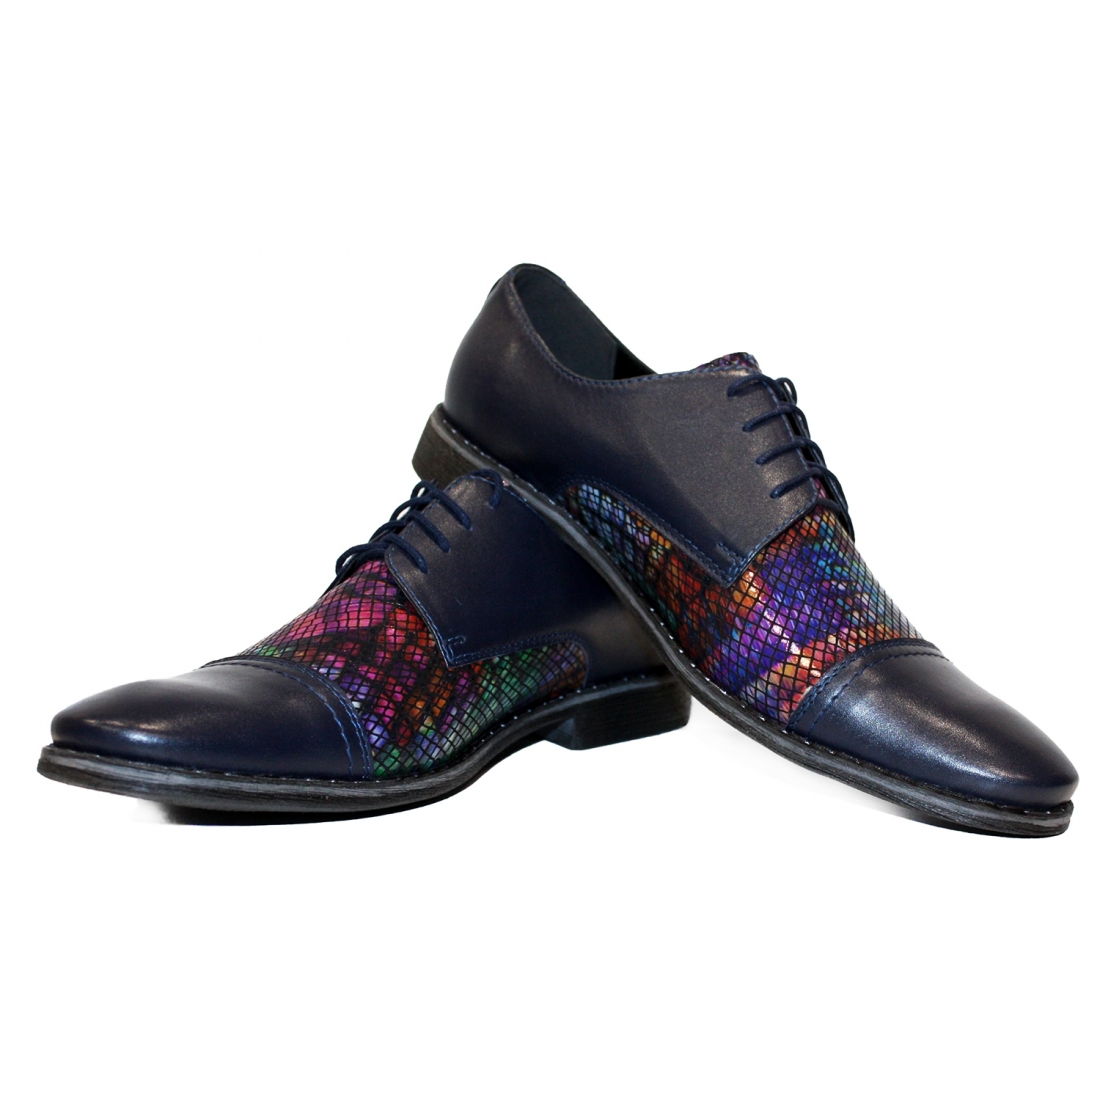 Modello Cubello - Zapatos Clásicos - Handmade Colorful Italian Leather Shoes